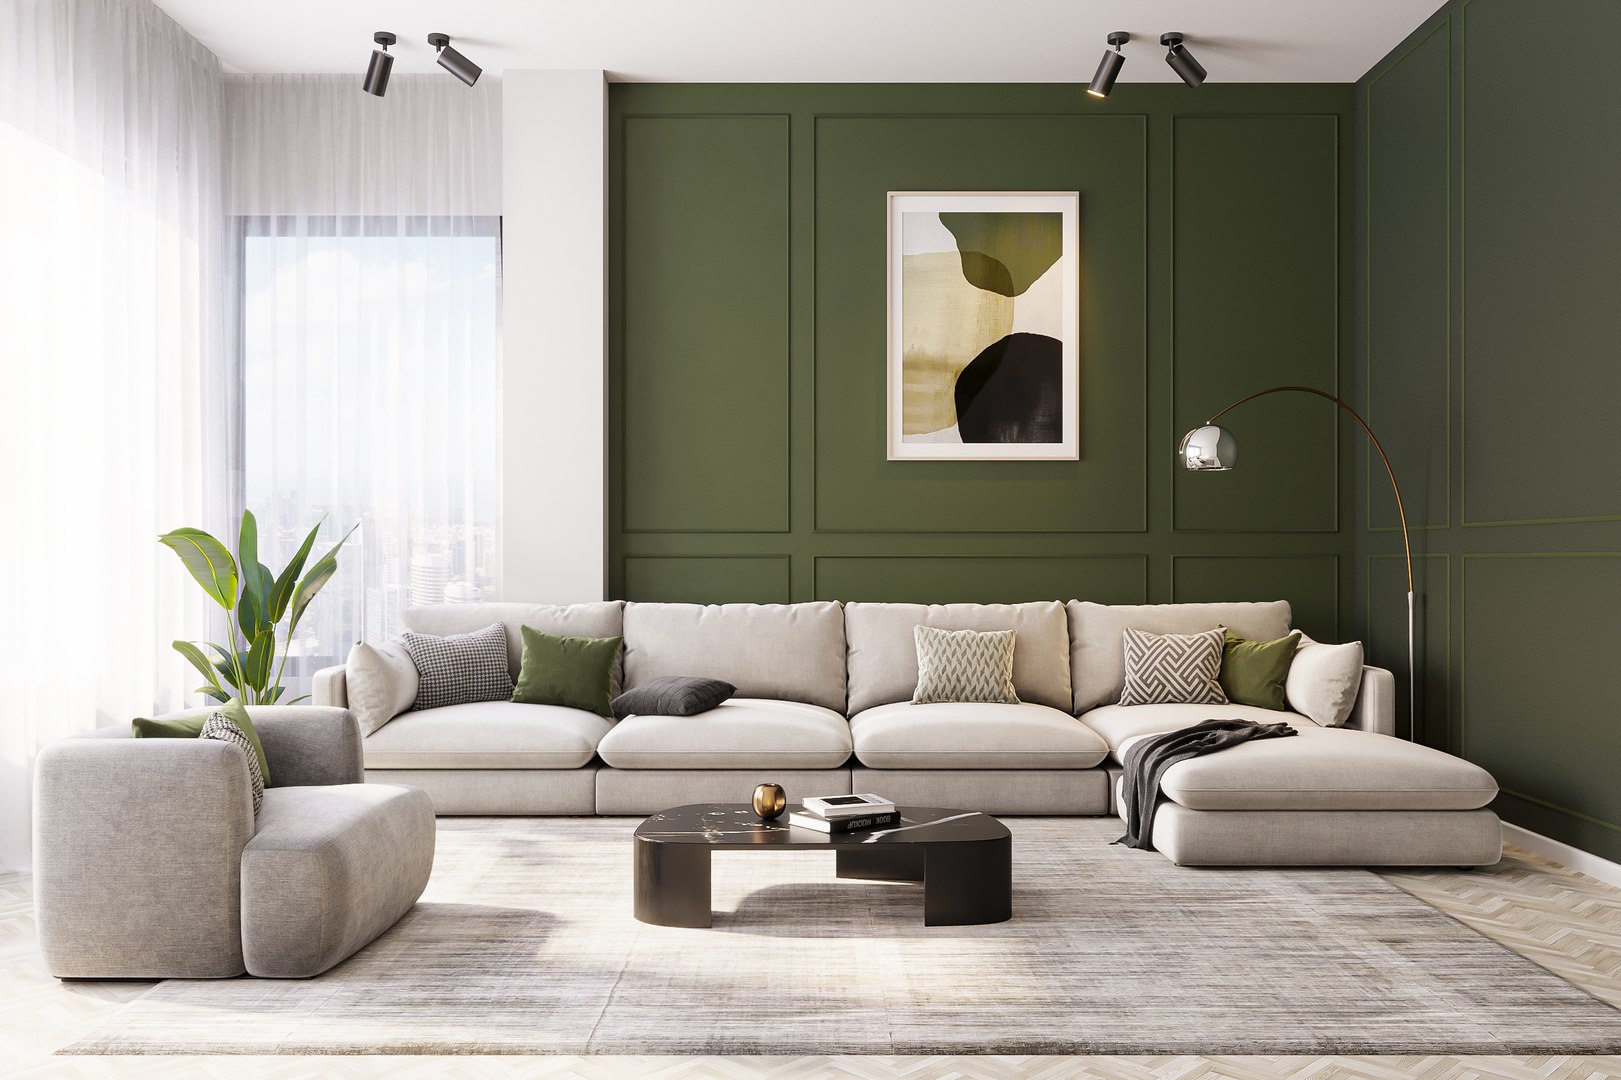 Interior livingroom scene 04 model - TurboSquid 2034467